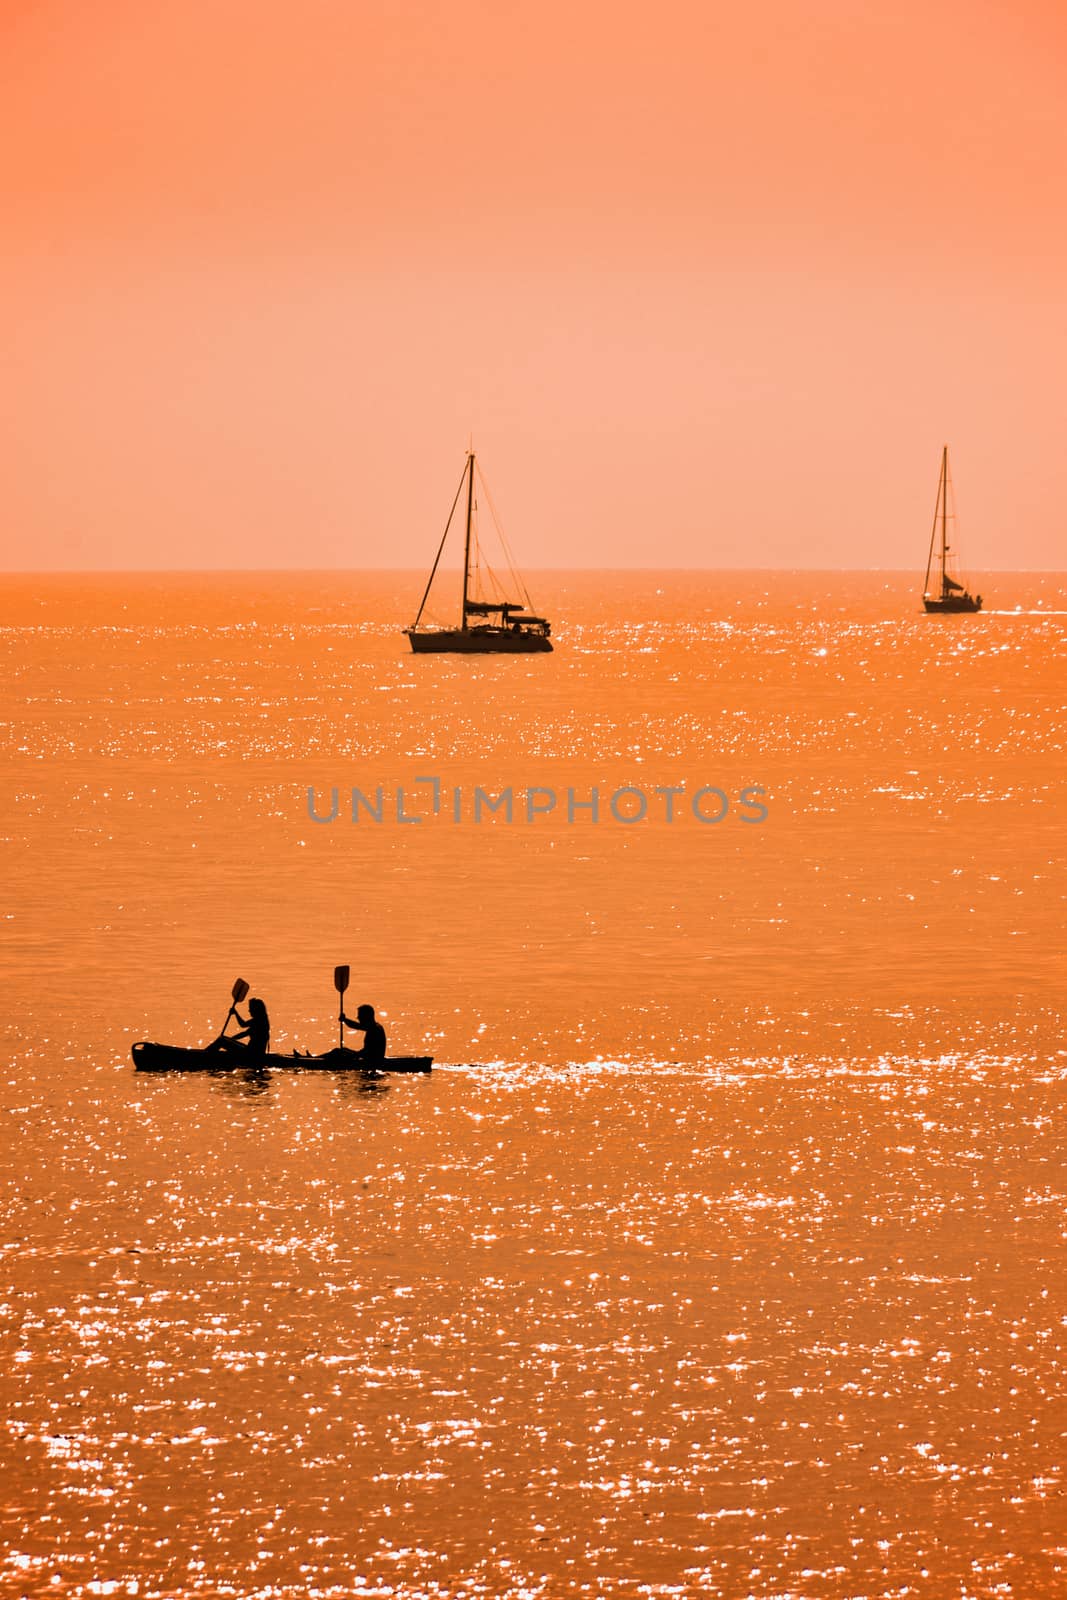 Kayak and two sailboats at sunset